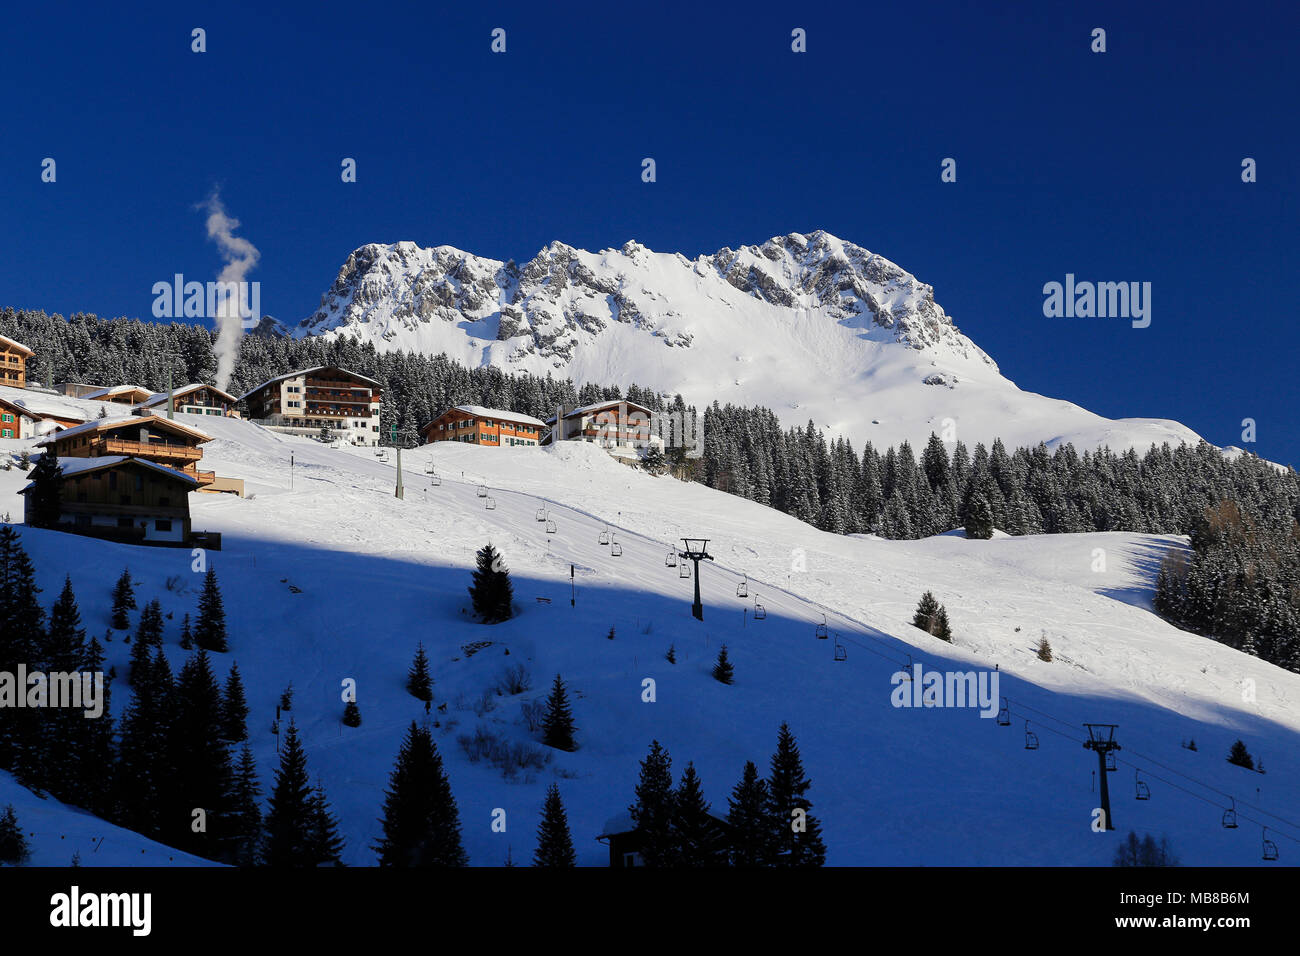 Vista della città Lech am Arlberg, Alpine Ski resort vicino a Zurs, San Anton e Stuben nella regione di Arlberg dell'Austria. Foto Stock